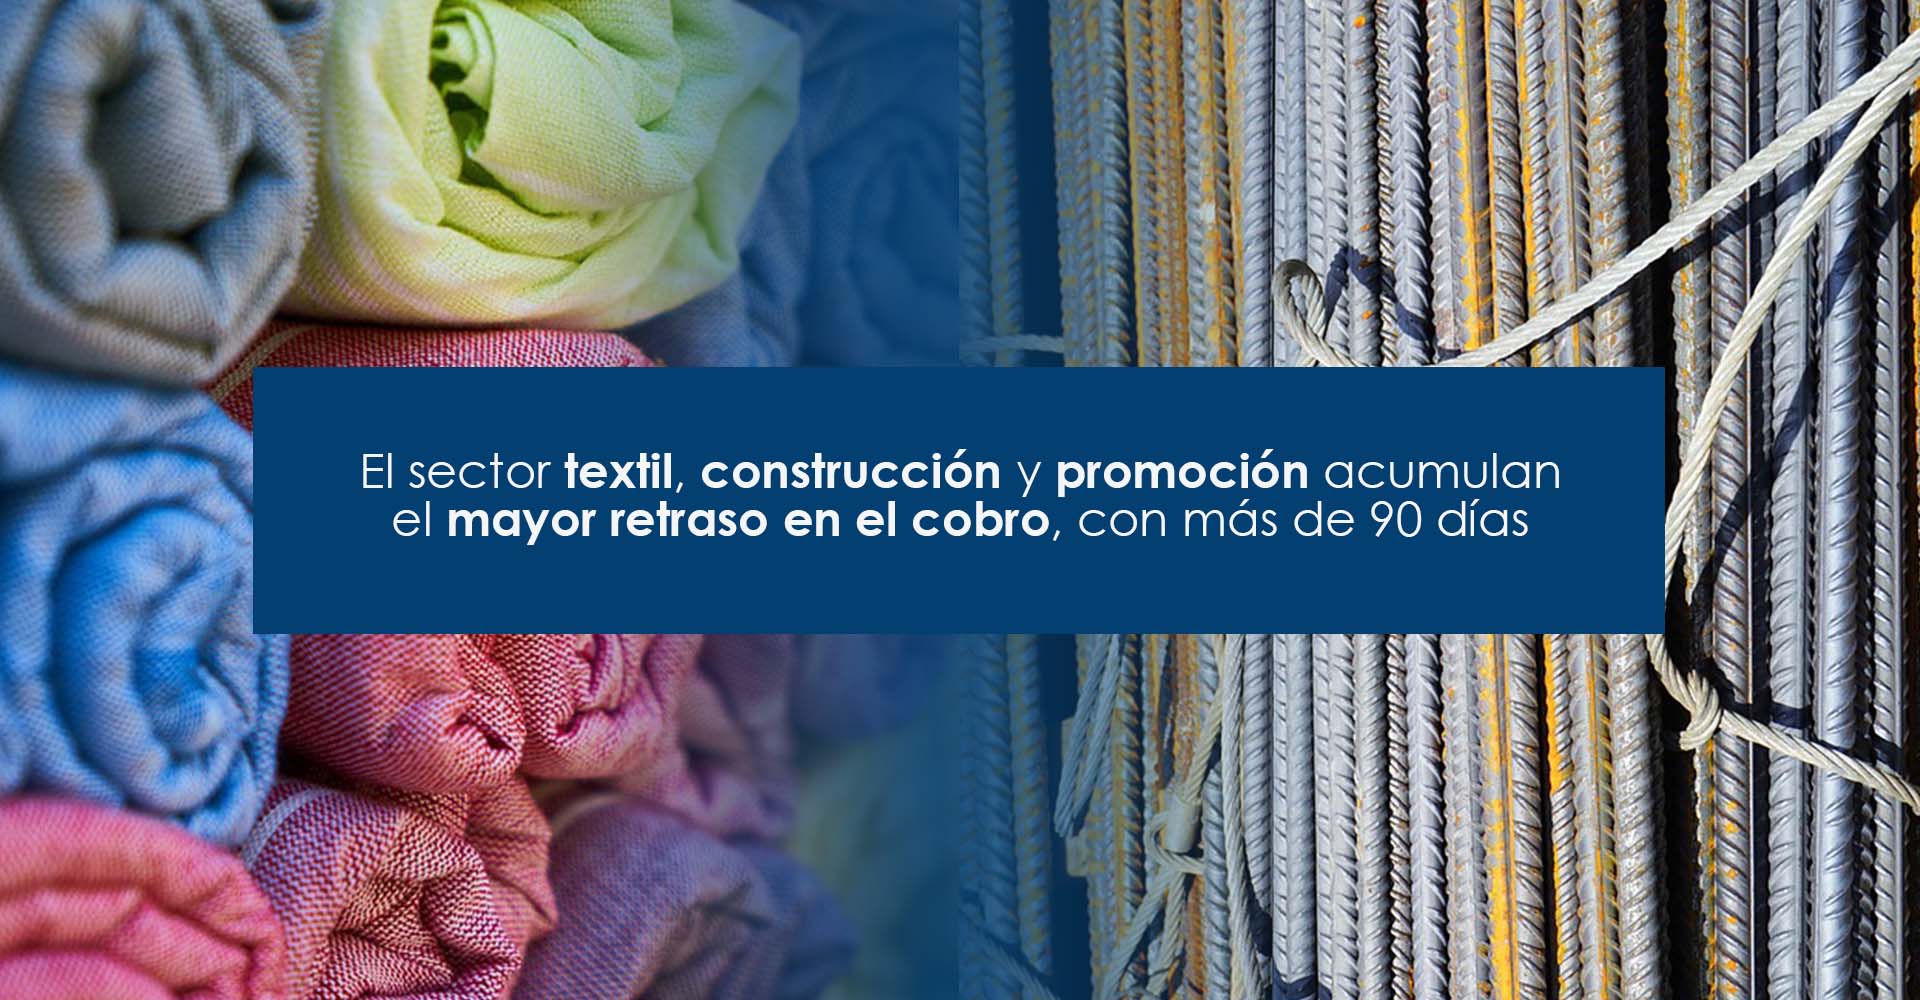 textil y de construcción y promoción acumulan el mayor retraso en el cobro, con más de 90 días